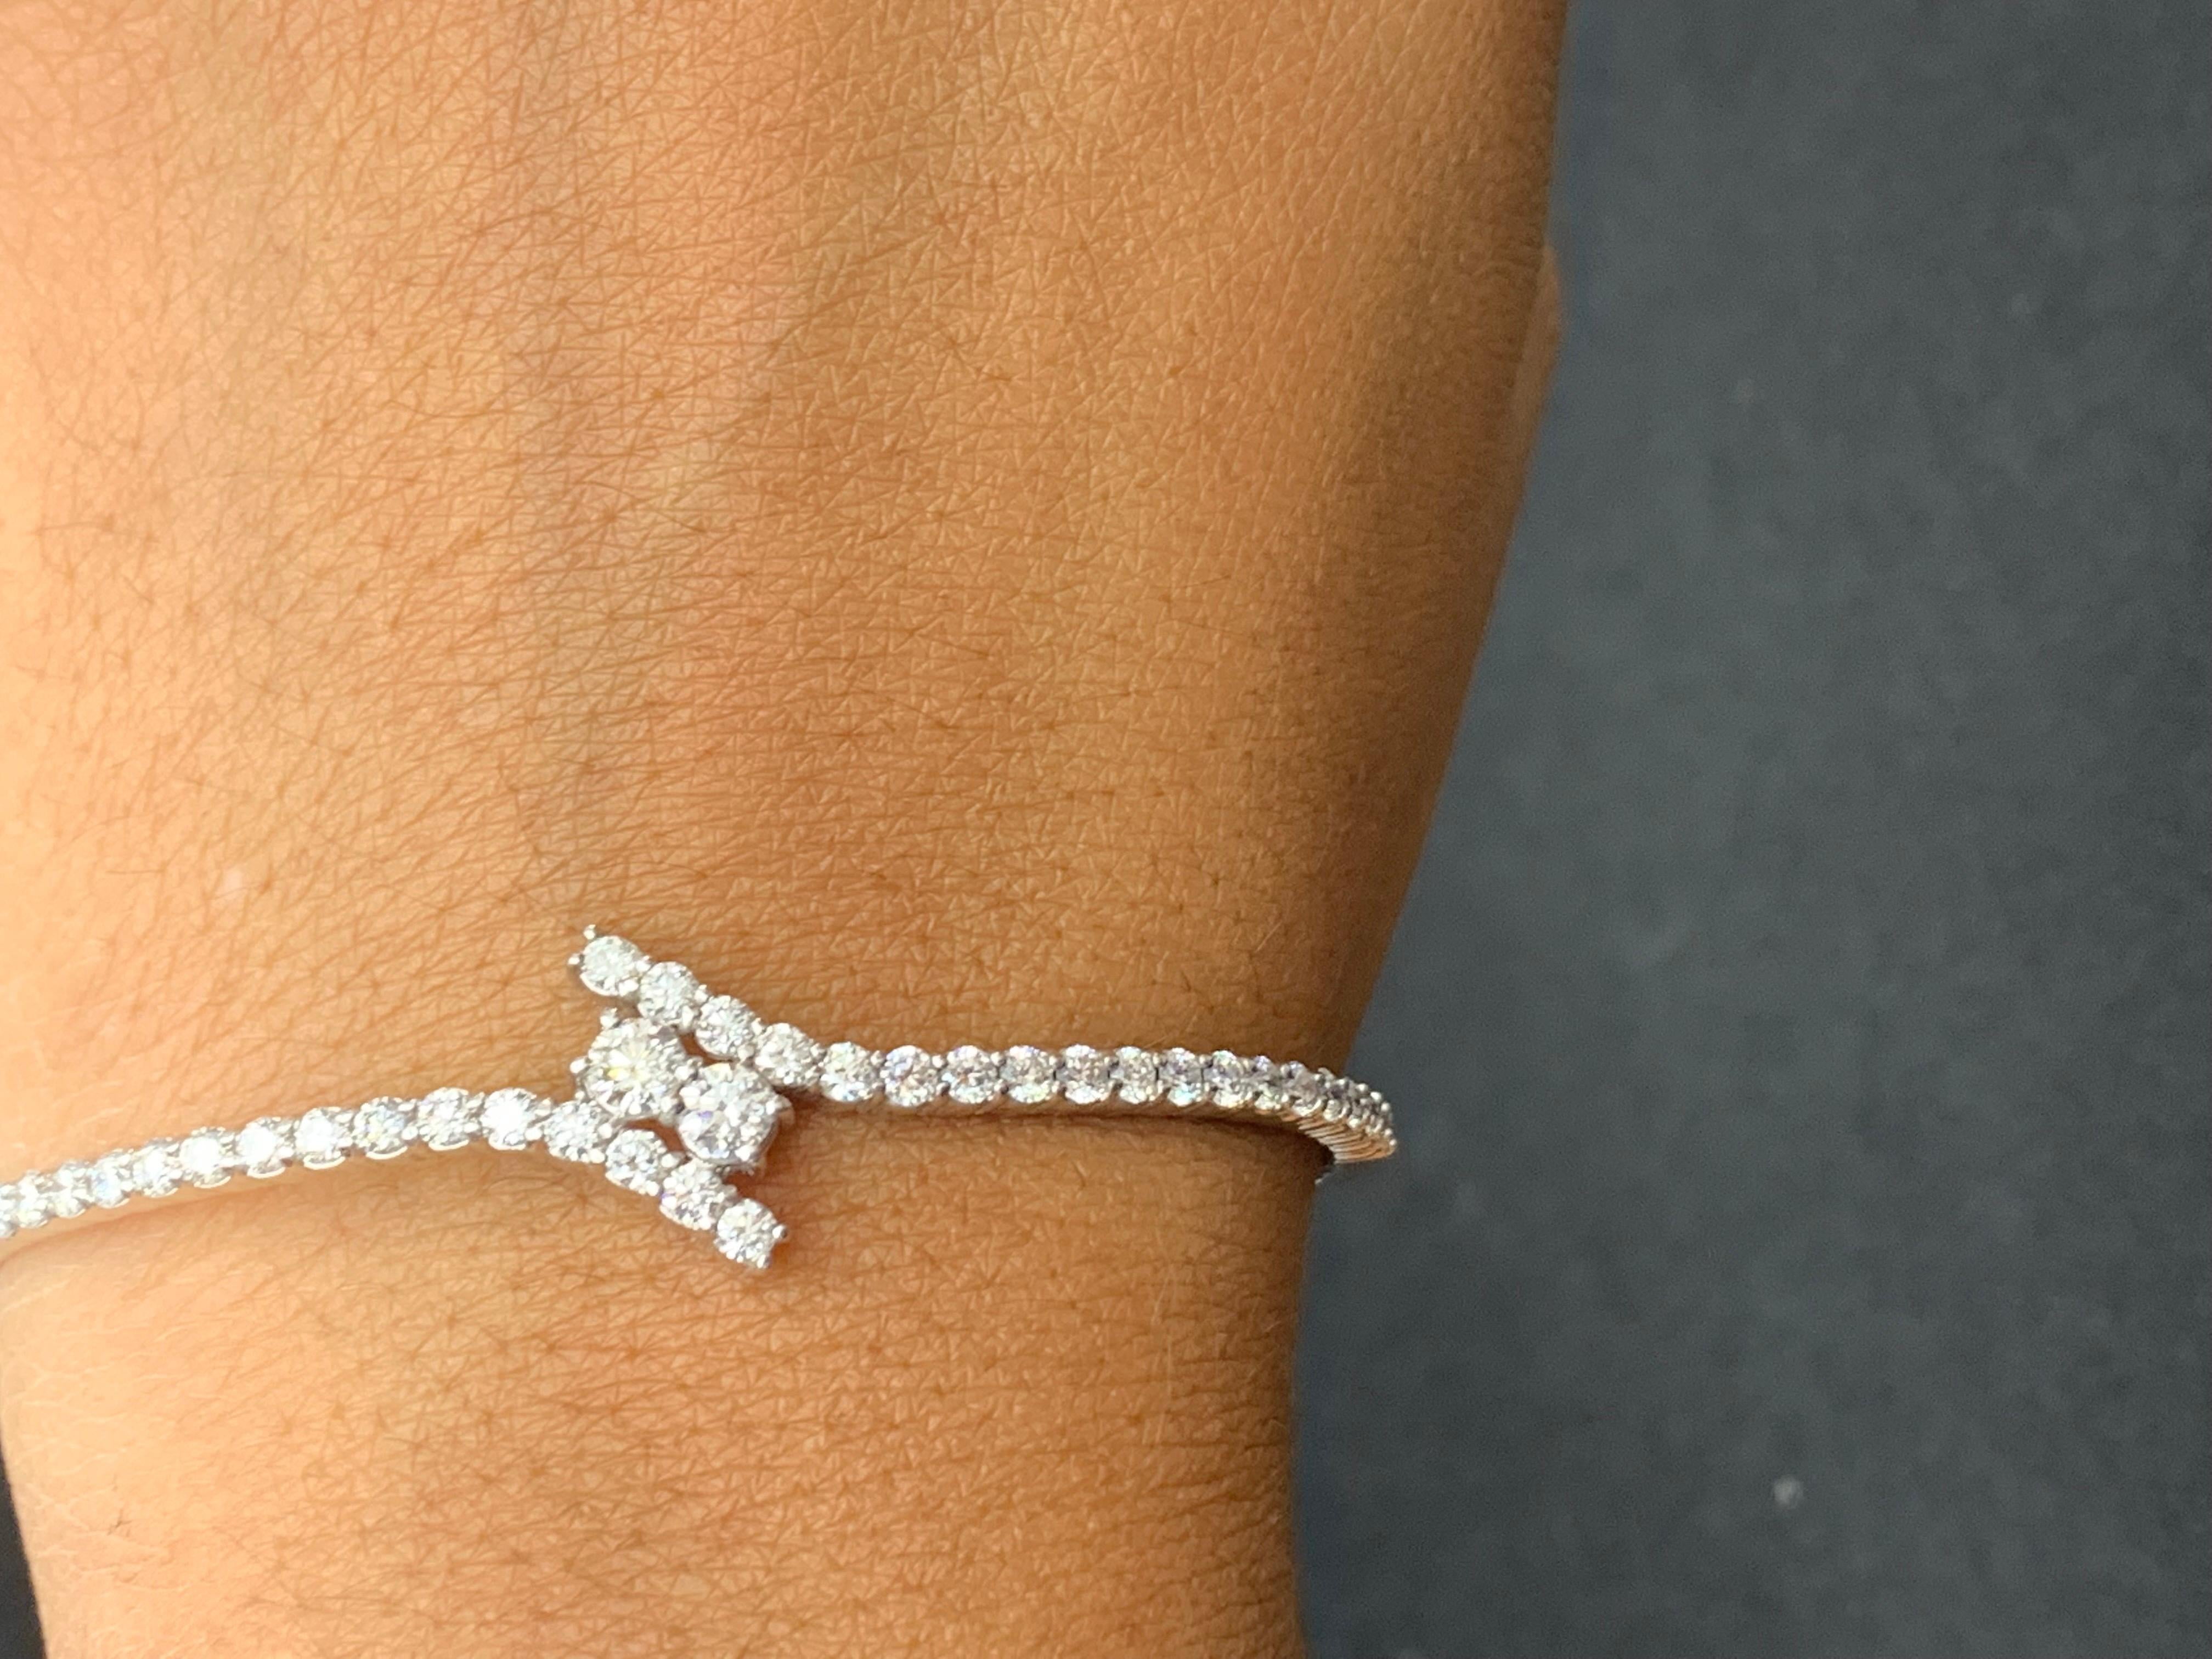 Ce magnifique bracelet présente 40 diamants ronds et brillants pesant 2,13 carats au total. Le bangle a un design incurvé avec 2 diamants sertis au centre. Fabriqué en or blanc 14 carats.